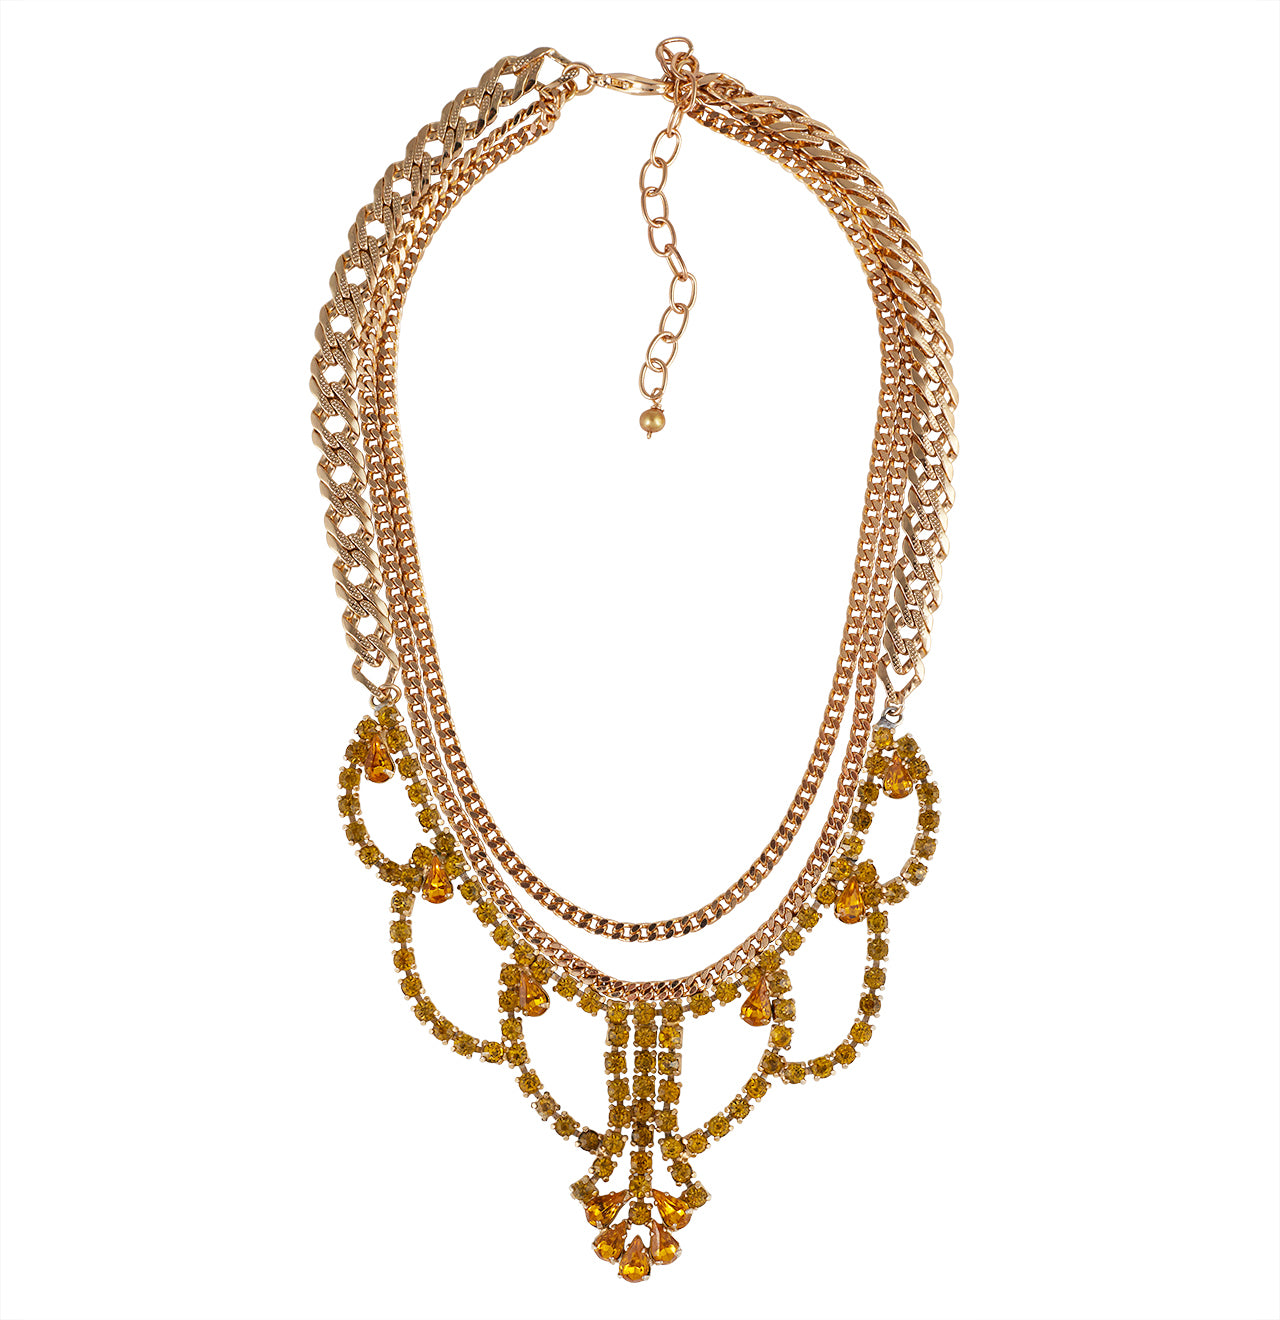 Vintage Golden Hour Hepburn Necklace – Natalie B. Jewelry